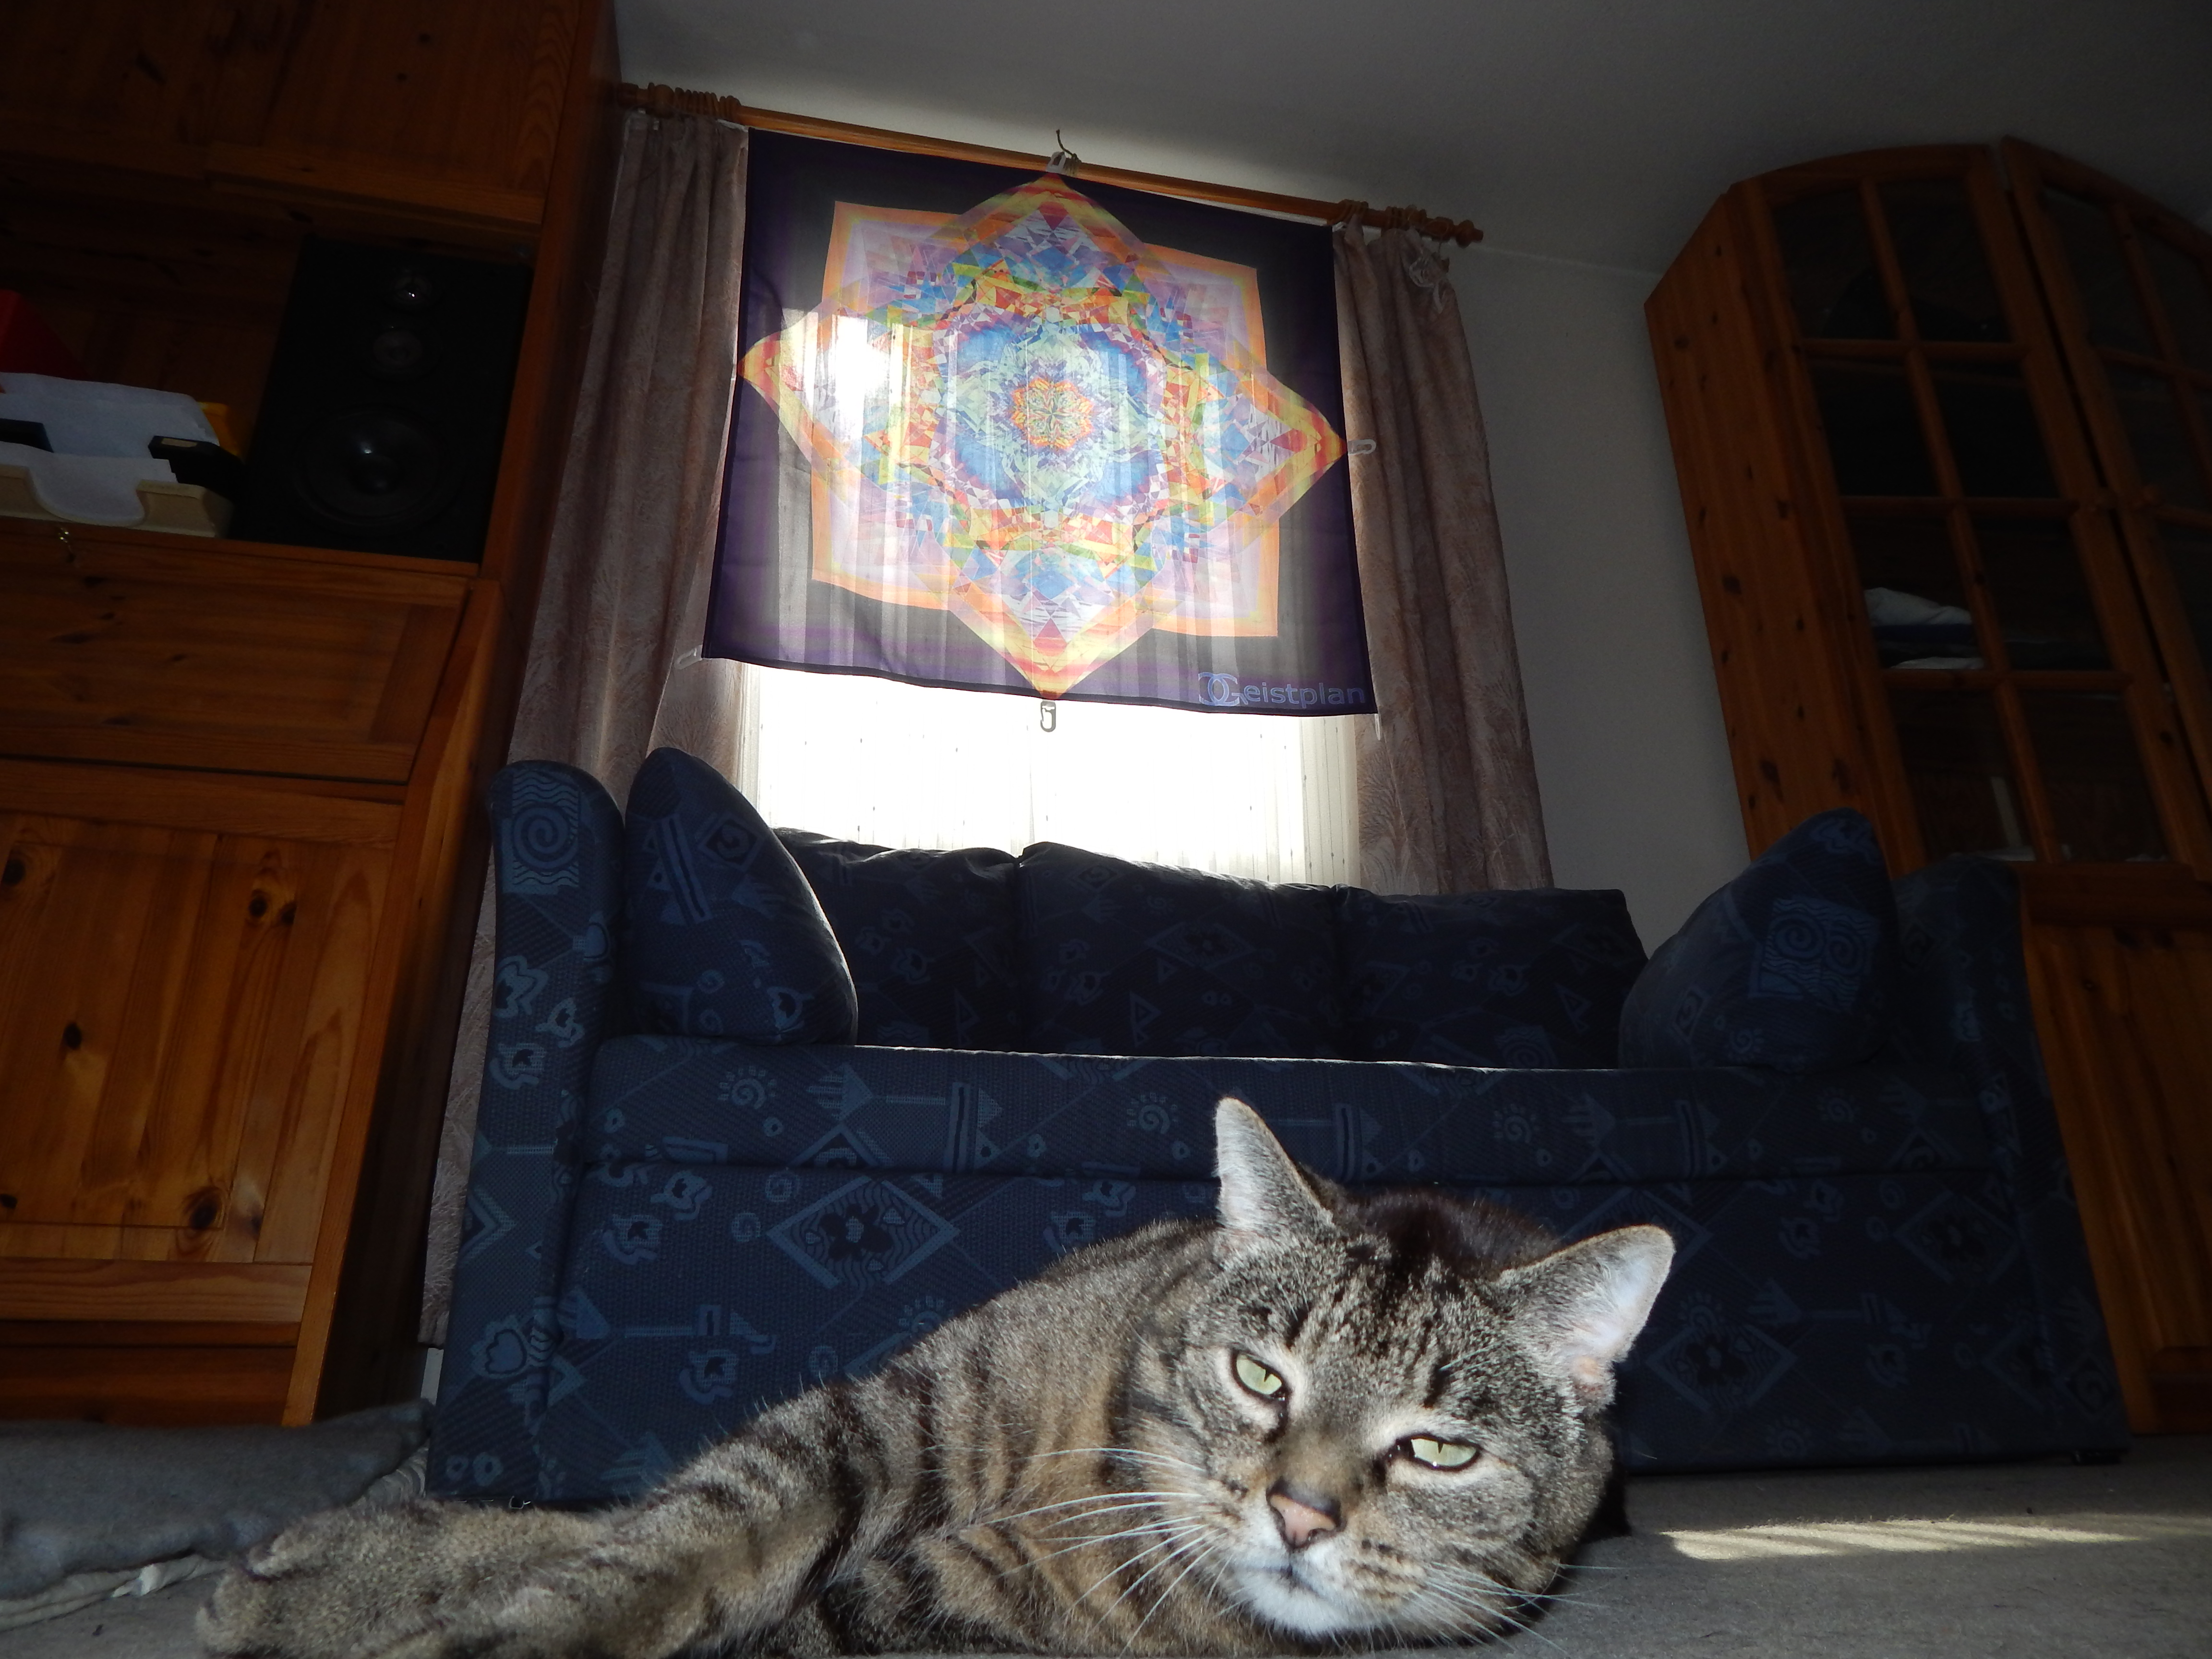 Bild von einem hinterleuchtenden Tuch (durch die Sonne) das am Fenster hängt, welches ein komplexes buntes Mandala als Aufdruck hat. Davor ist eine verplanter Kater :D